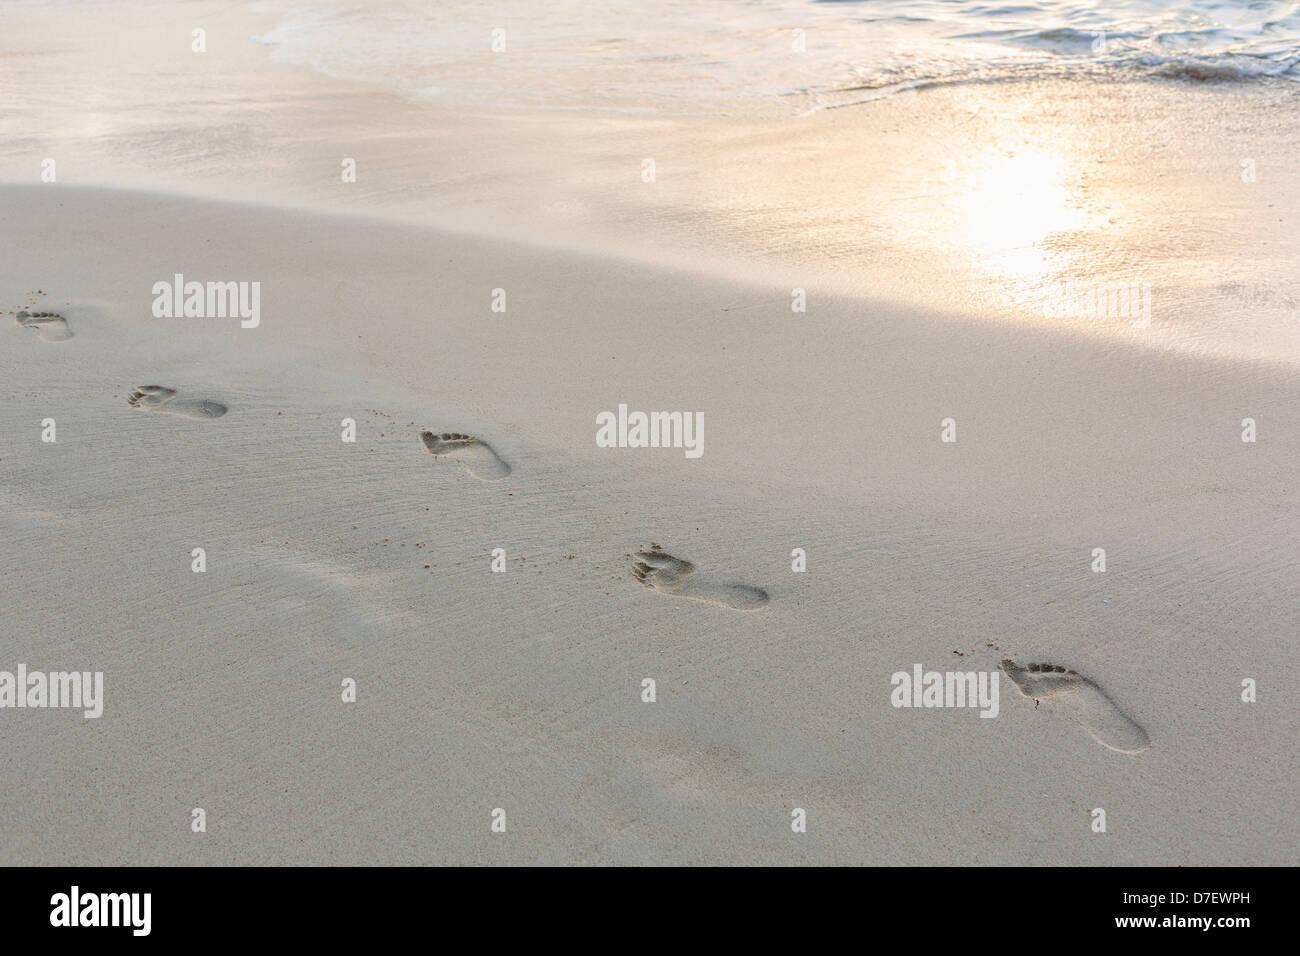 Impressioni di passi nella sabbia in spiaggia Foto Stock